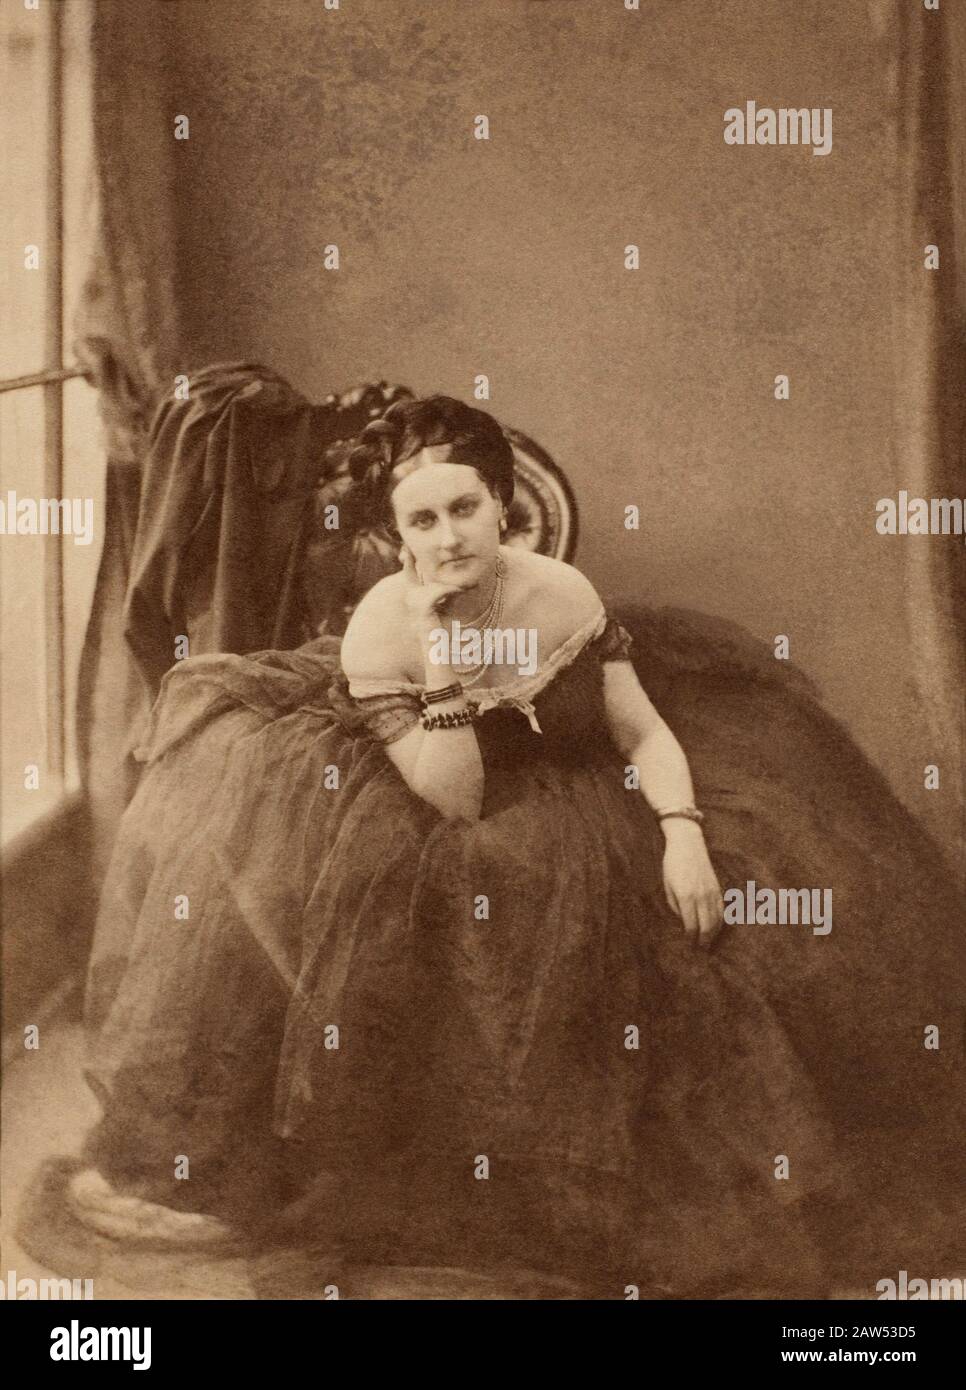 1856 CA , PARÍS , FRANCIA : la condesa italiana Virginia Oldoini Verasis di CASTIGLIONE ( 1837 - 1899 ) , amante del Imperor francés Napoleón III . Cou Foto de stock